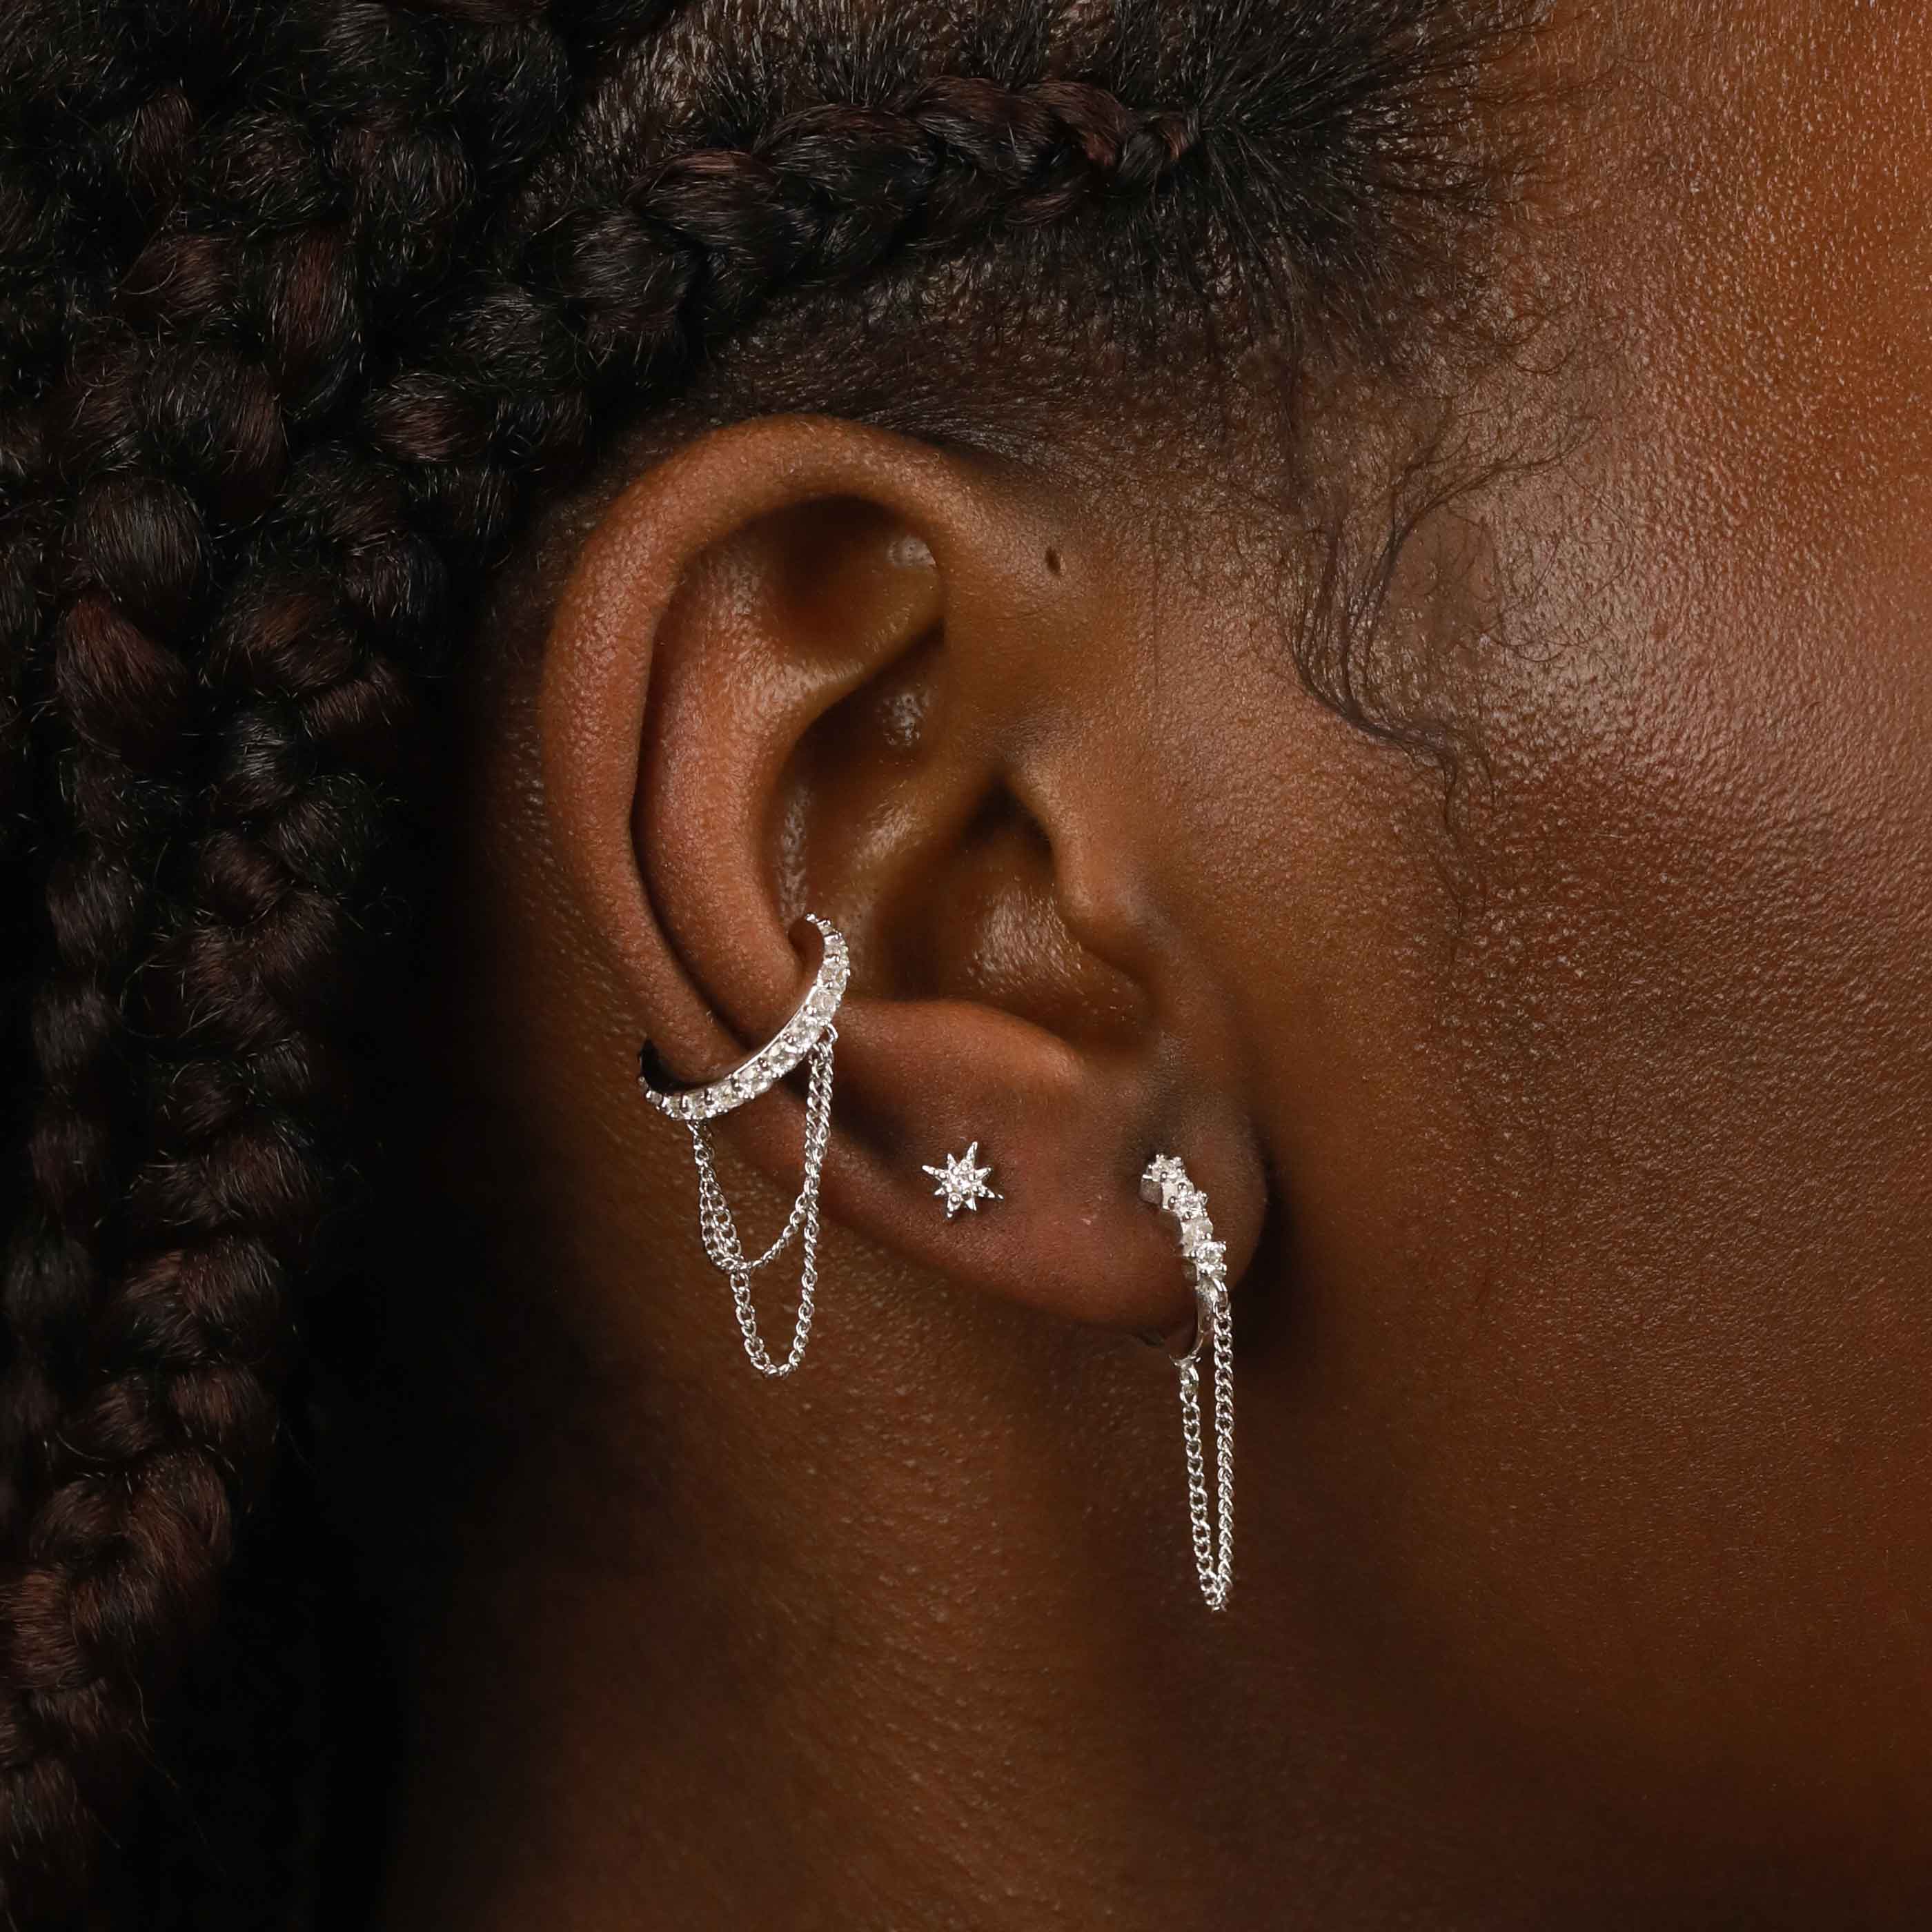 Crystal Chain Silver Ear Cuff | Astrid & Miyu Earrings